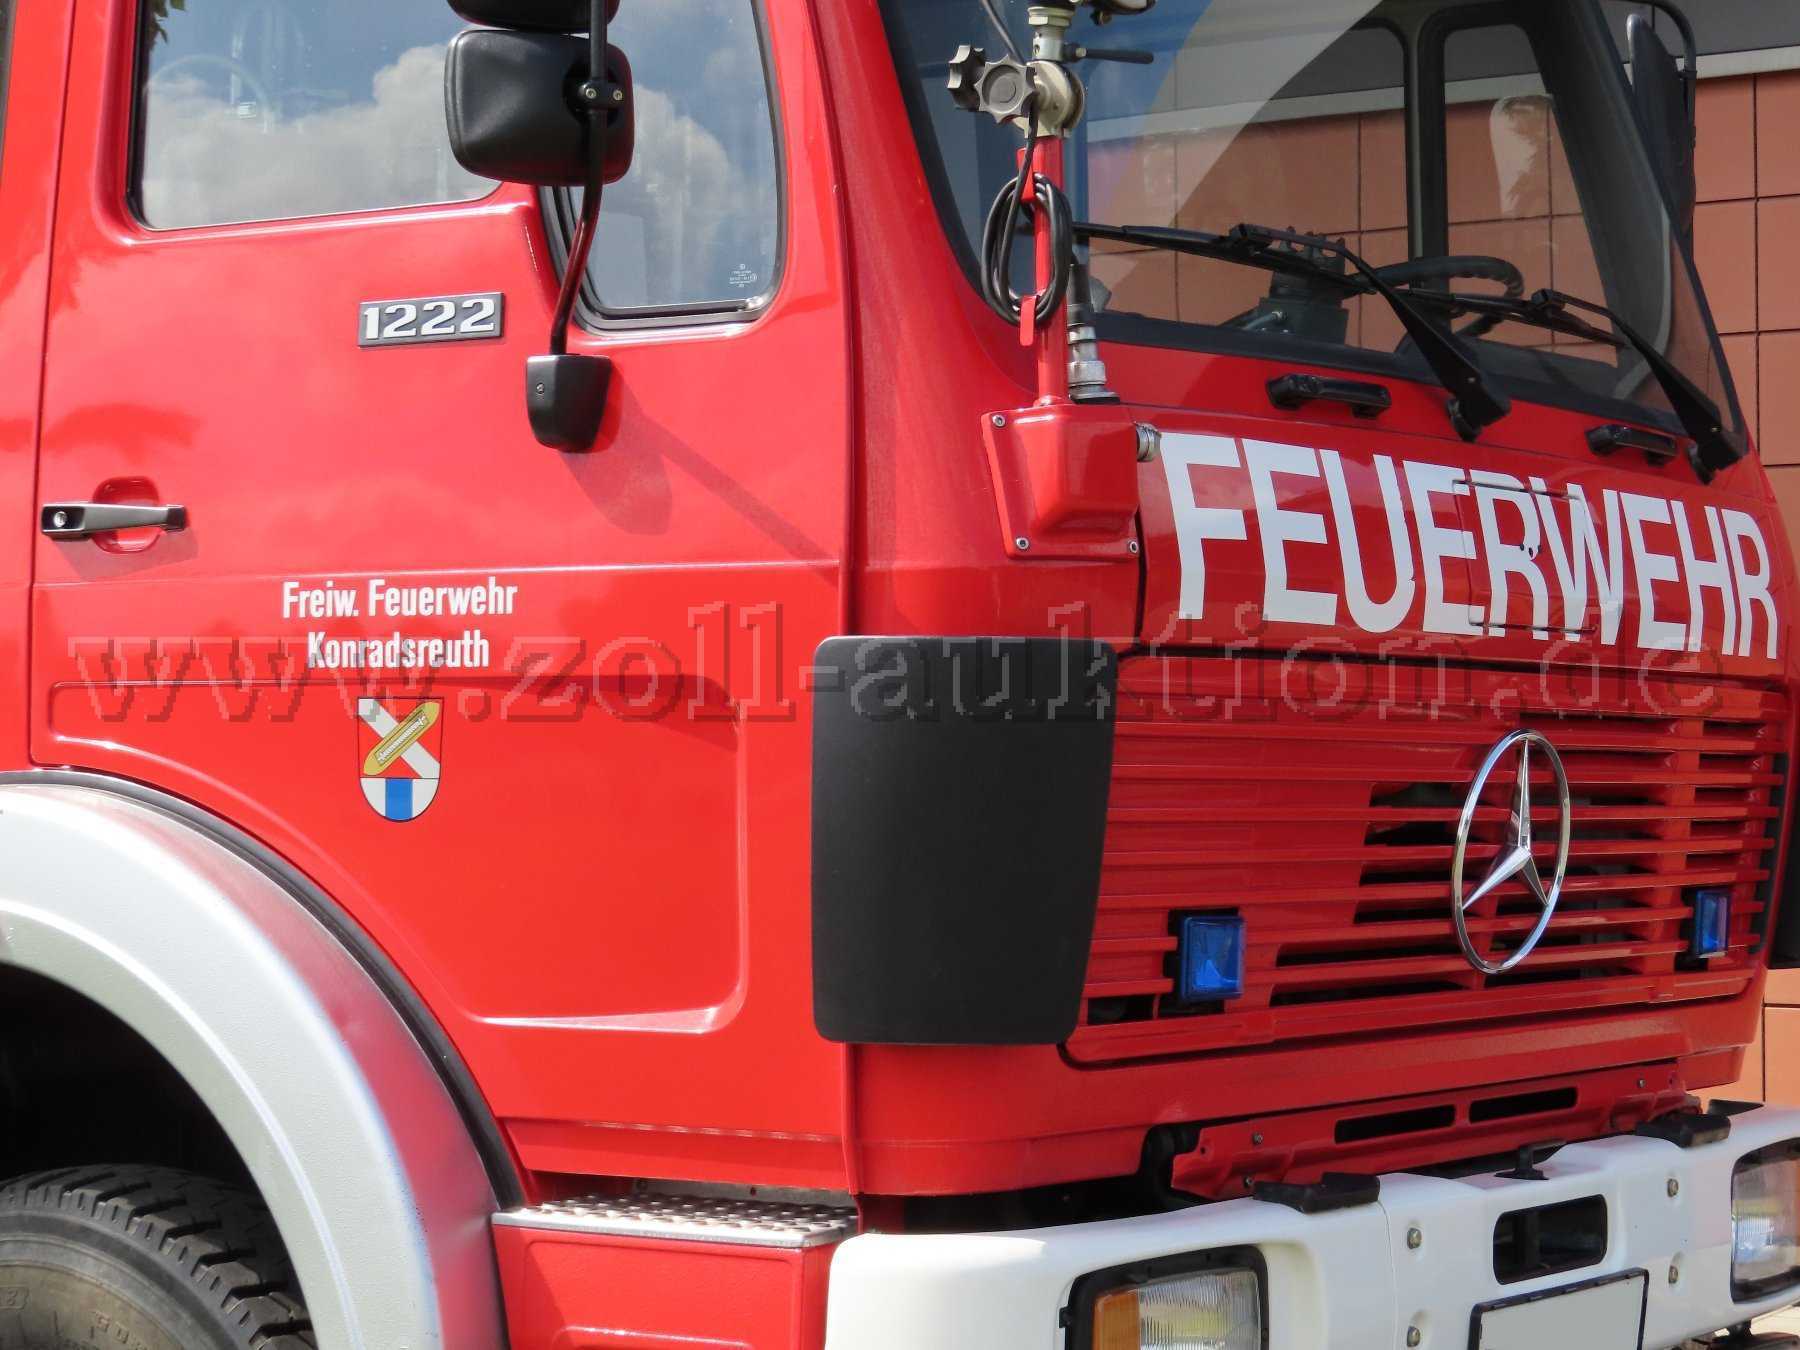 Rotes Feuerwehrfahrzeug Mercedes-Benz 1222
Nahansicht vorne rechts
Blick auf das Führerhaus und die Beifahrertür des Fahrzeugs